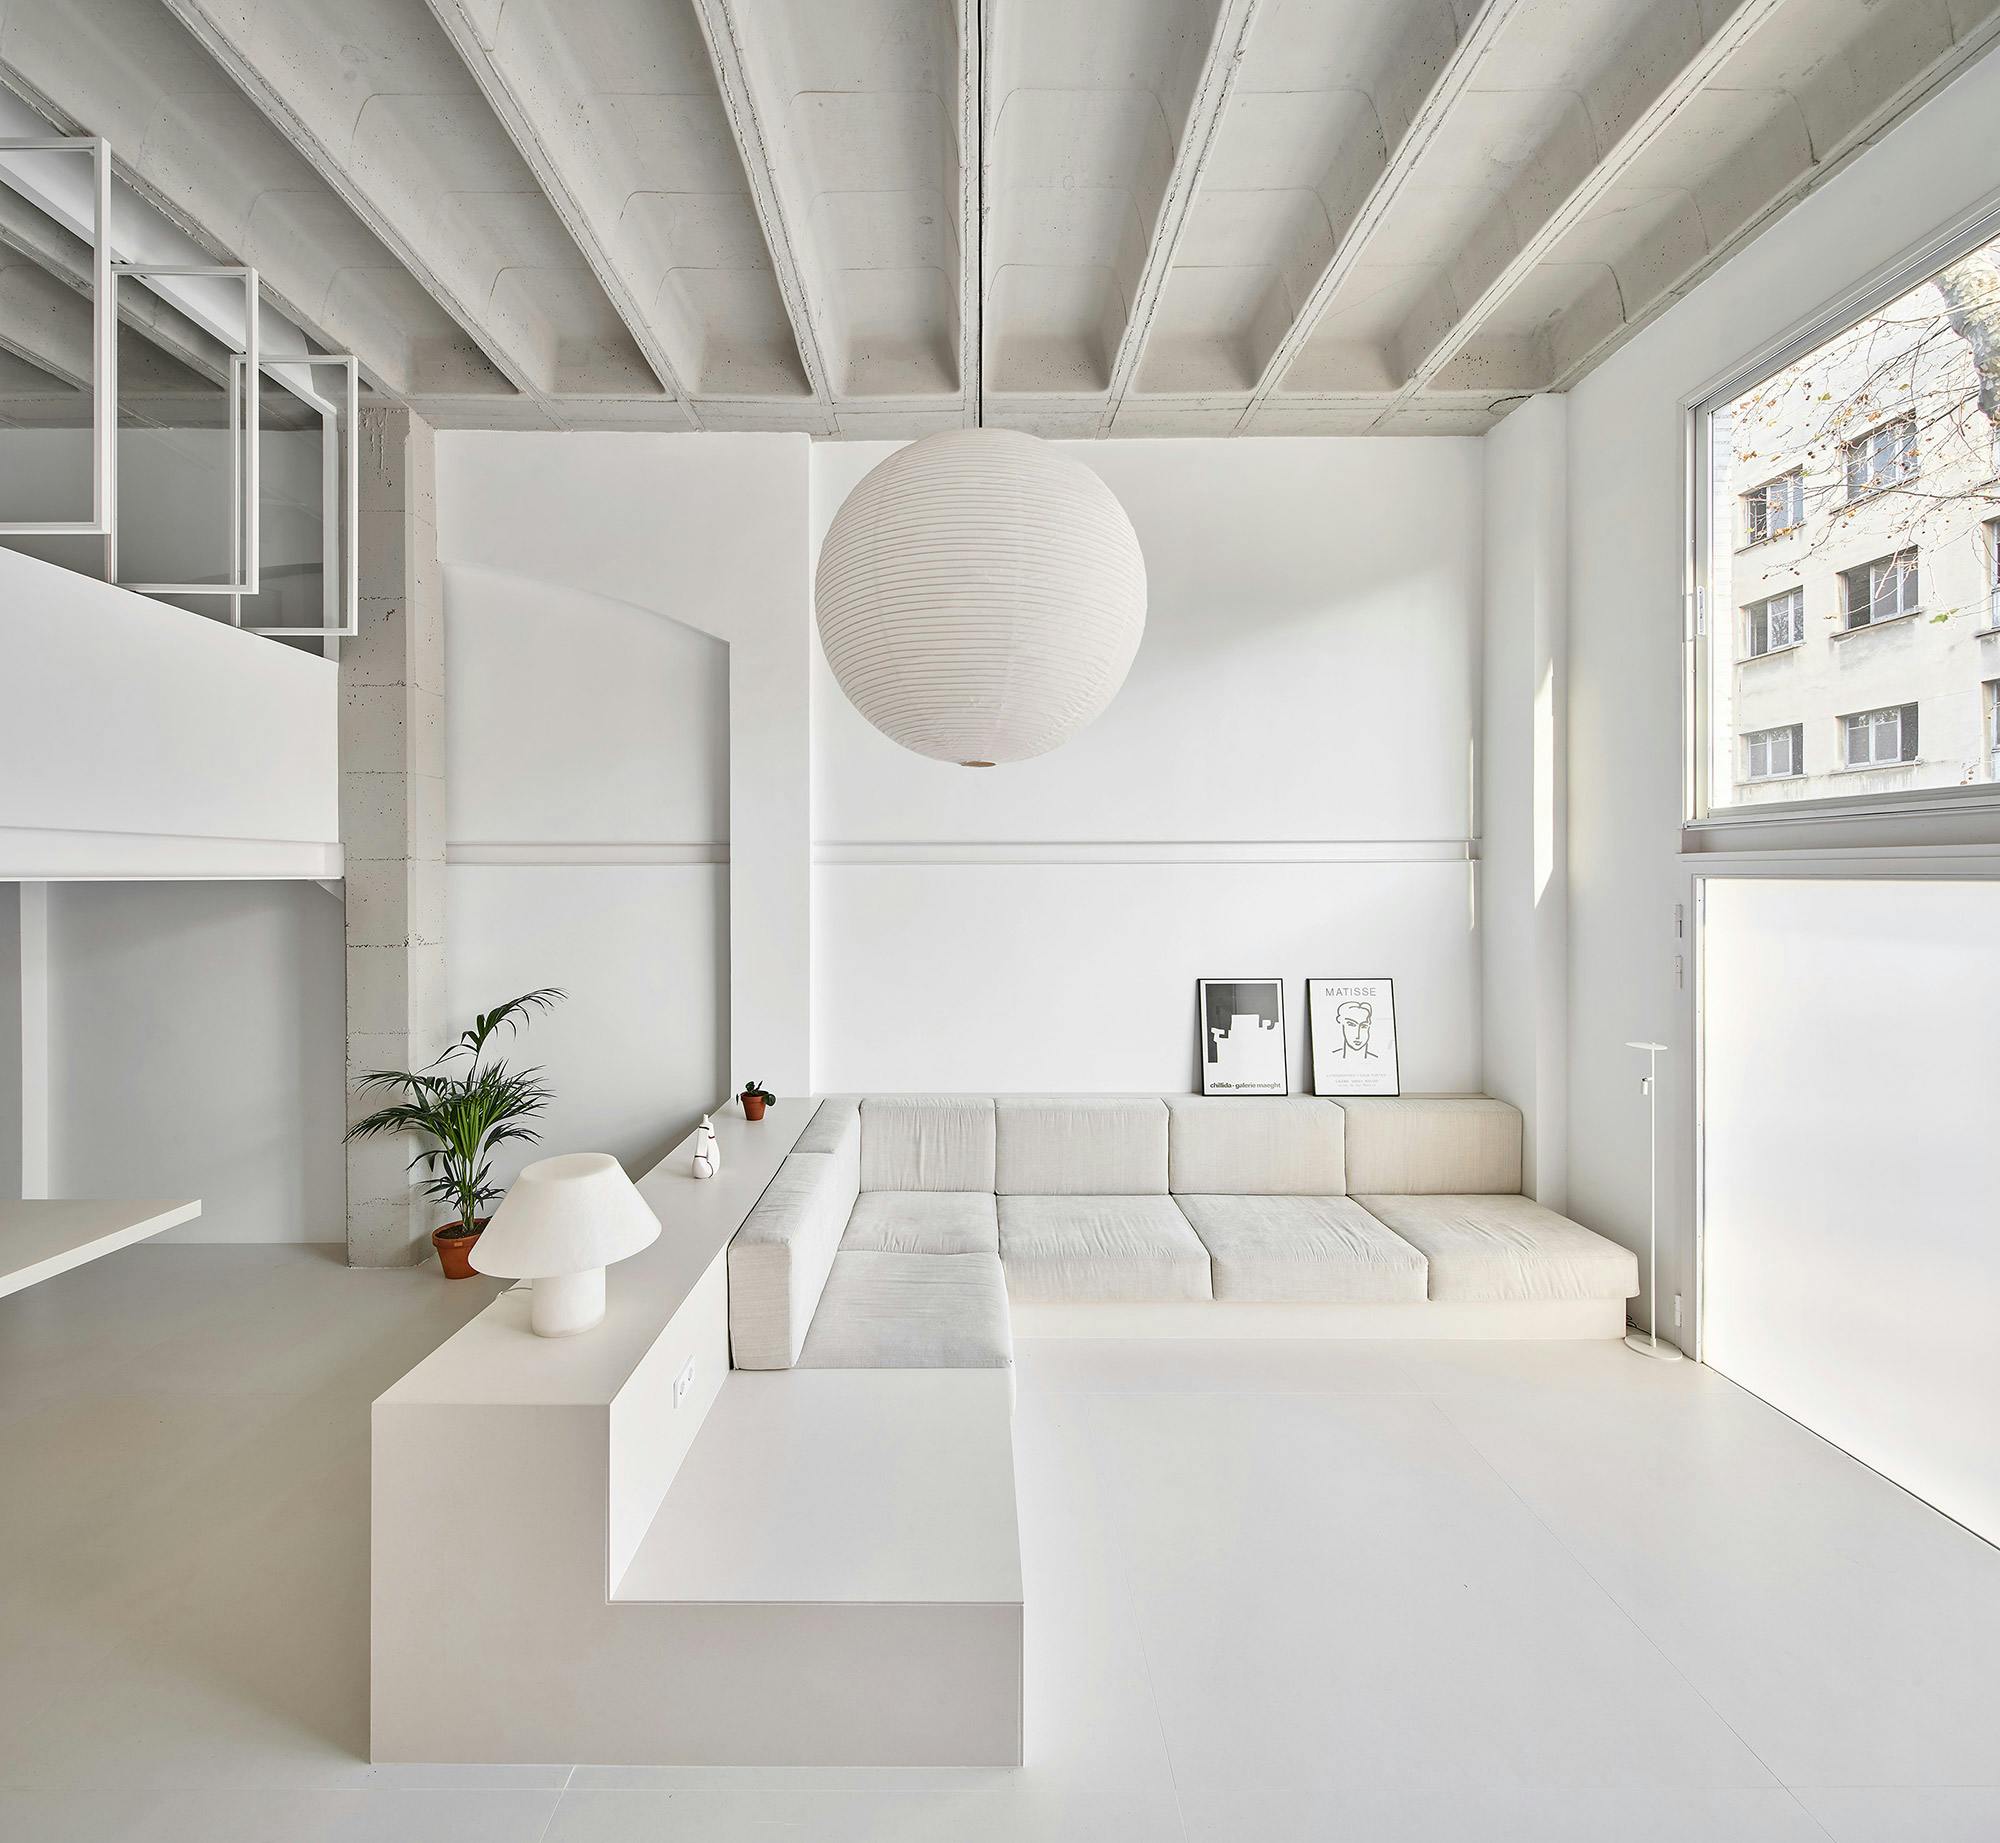 Imagem número 37 da actual secção de Unique materials for a highly versatile house da Cosentino Portugal